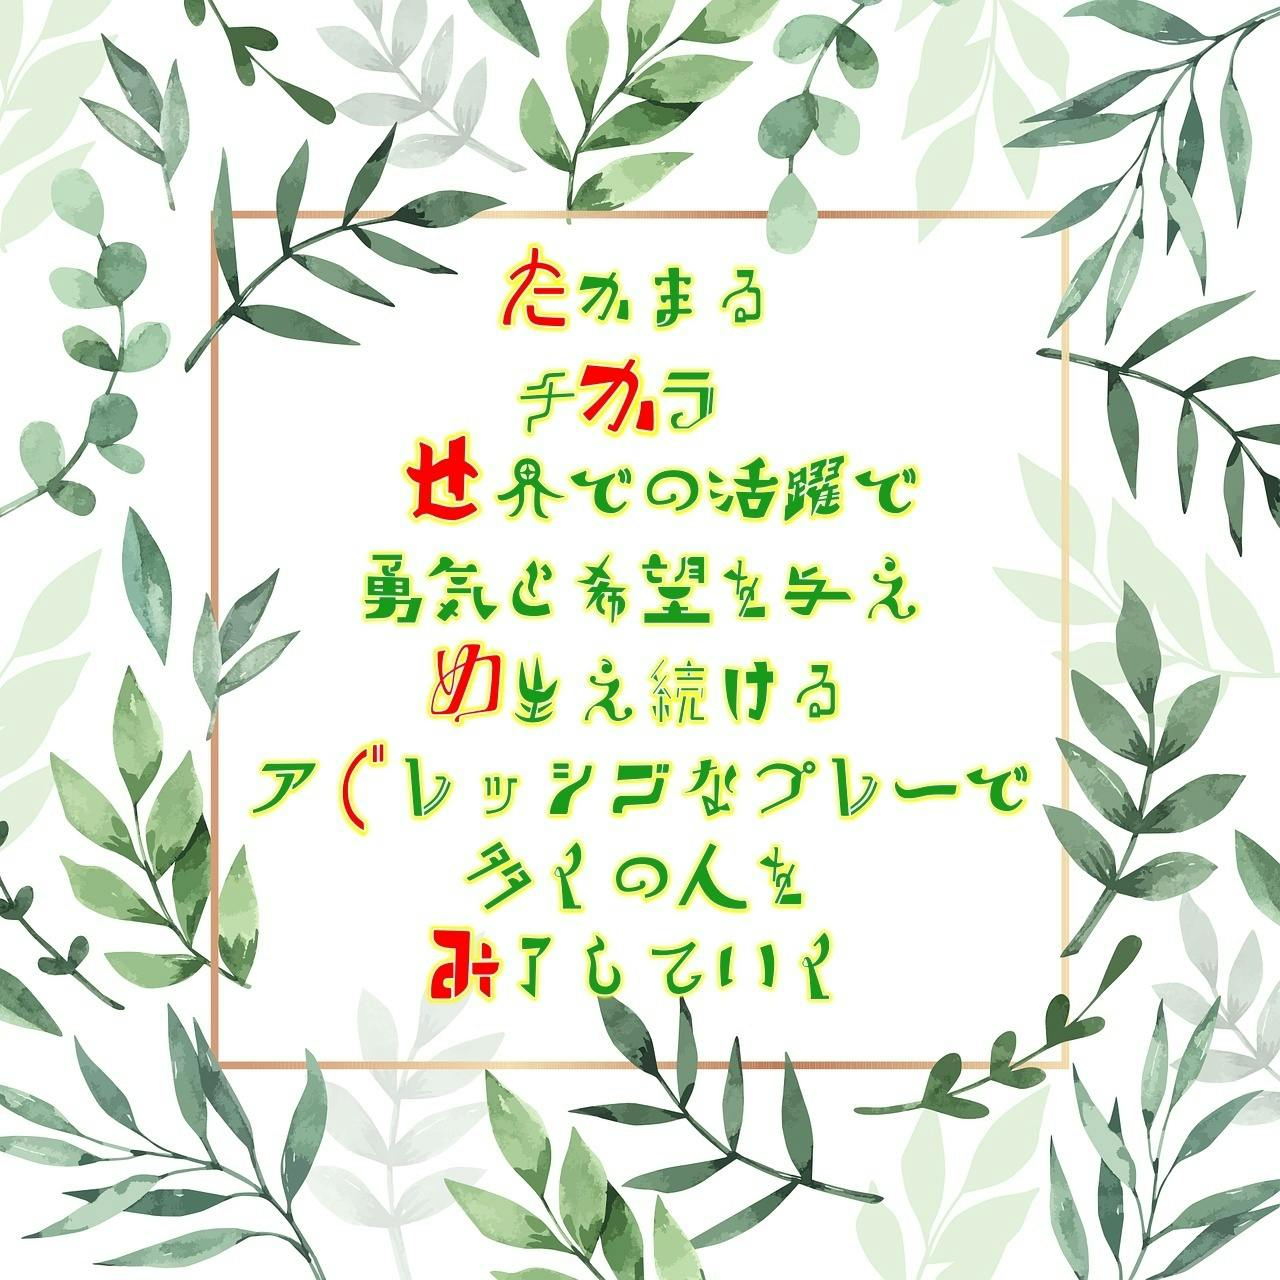 本日は女子サッカー選手 なでしこジャパン の 高瀬愛美 さんのお誕生日です 名前詩作成しました Campfireコミュニティ